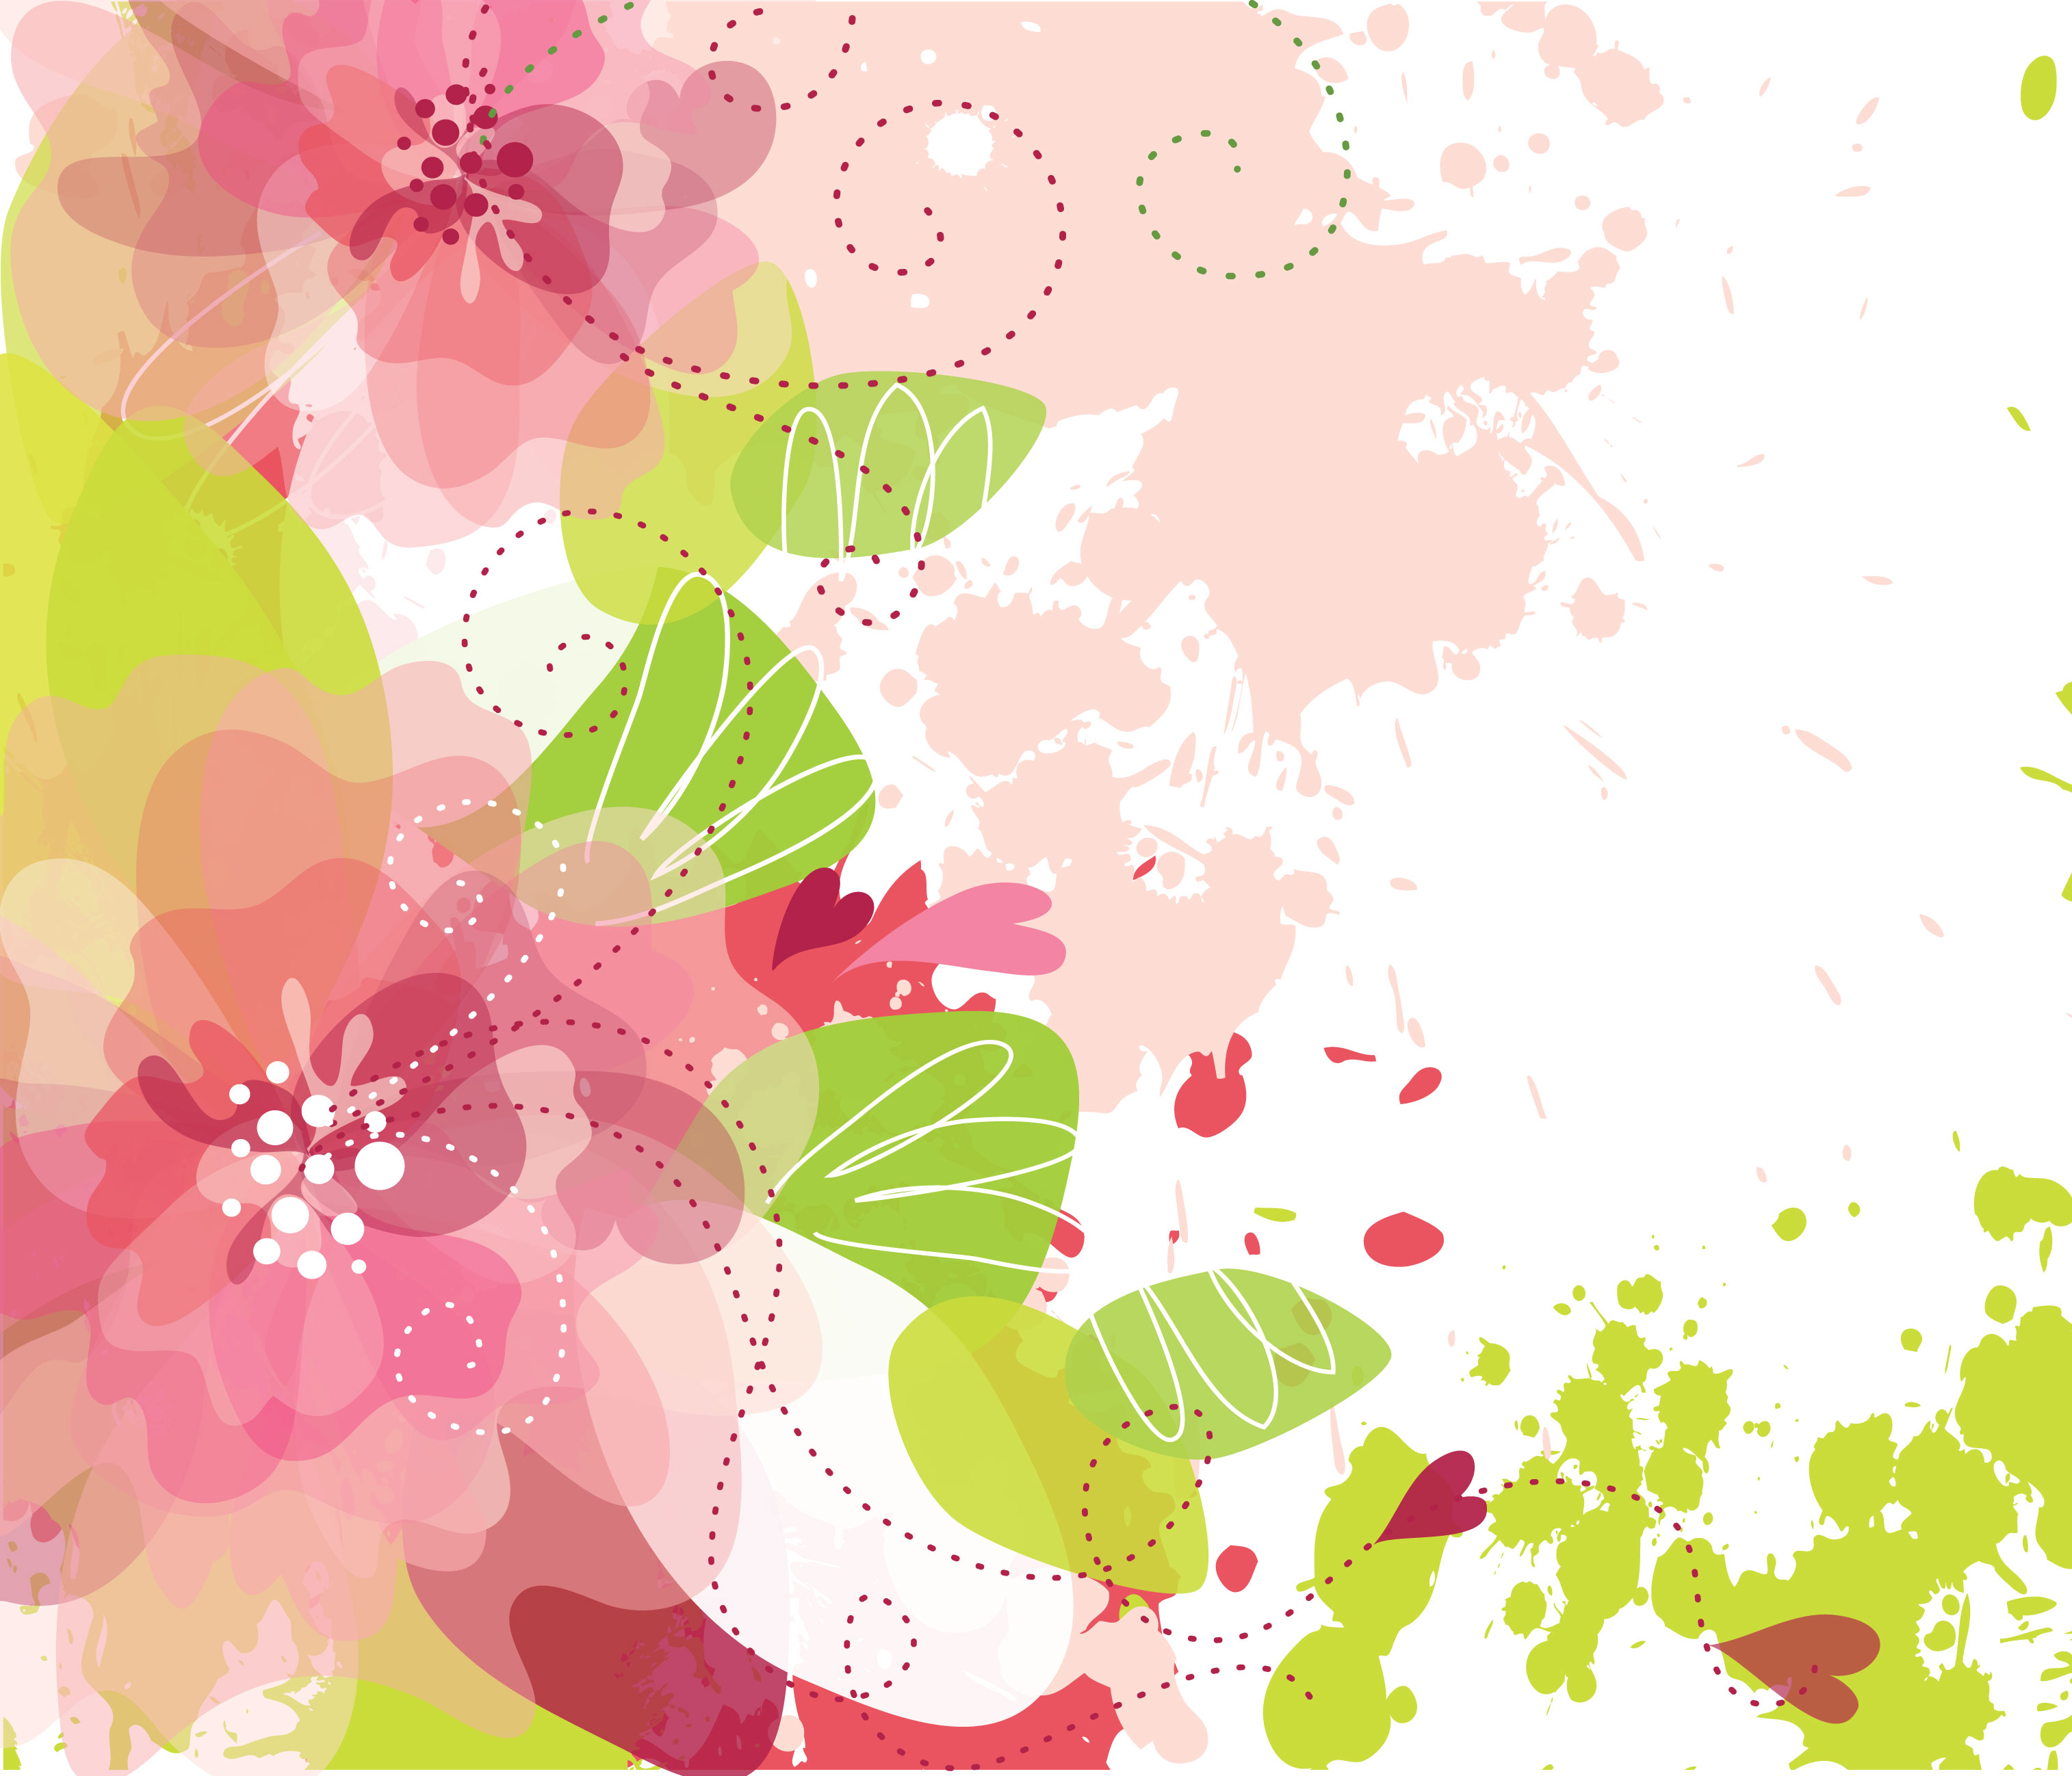 ピンクの花のイラスト フリー素材 壁紙 背景no 640 赤ピンク 緑葉